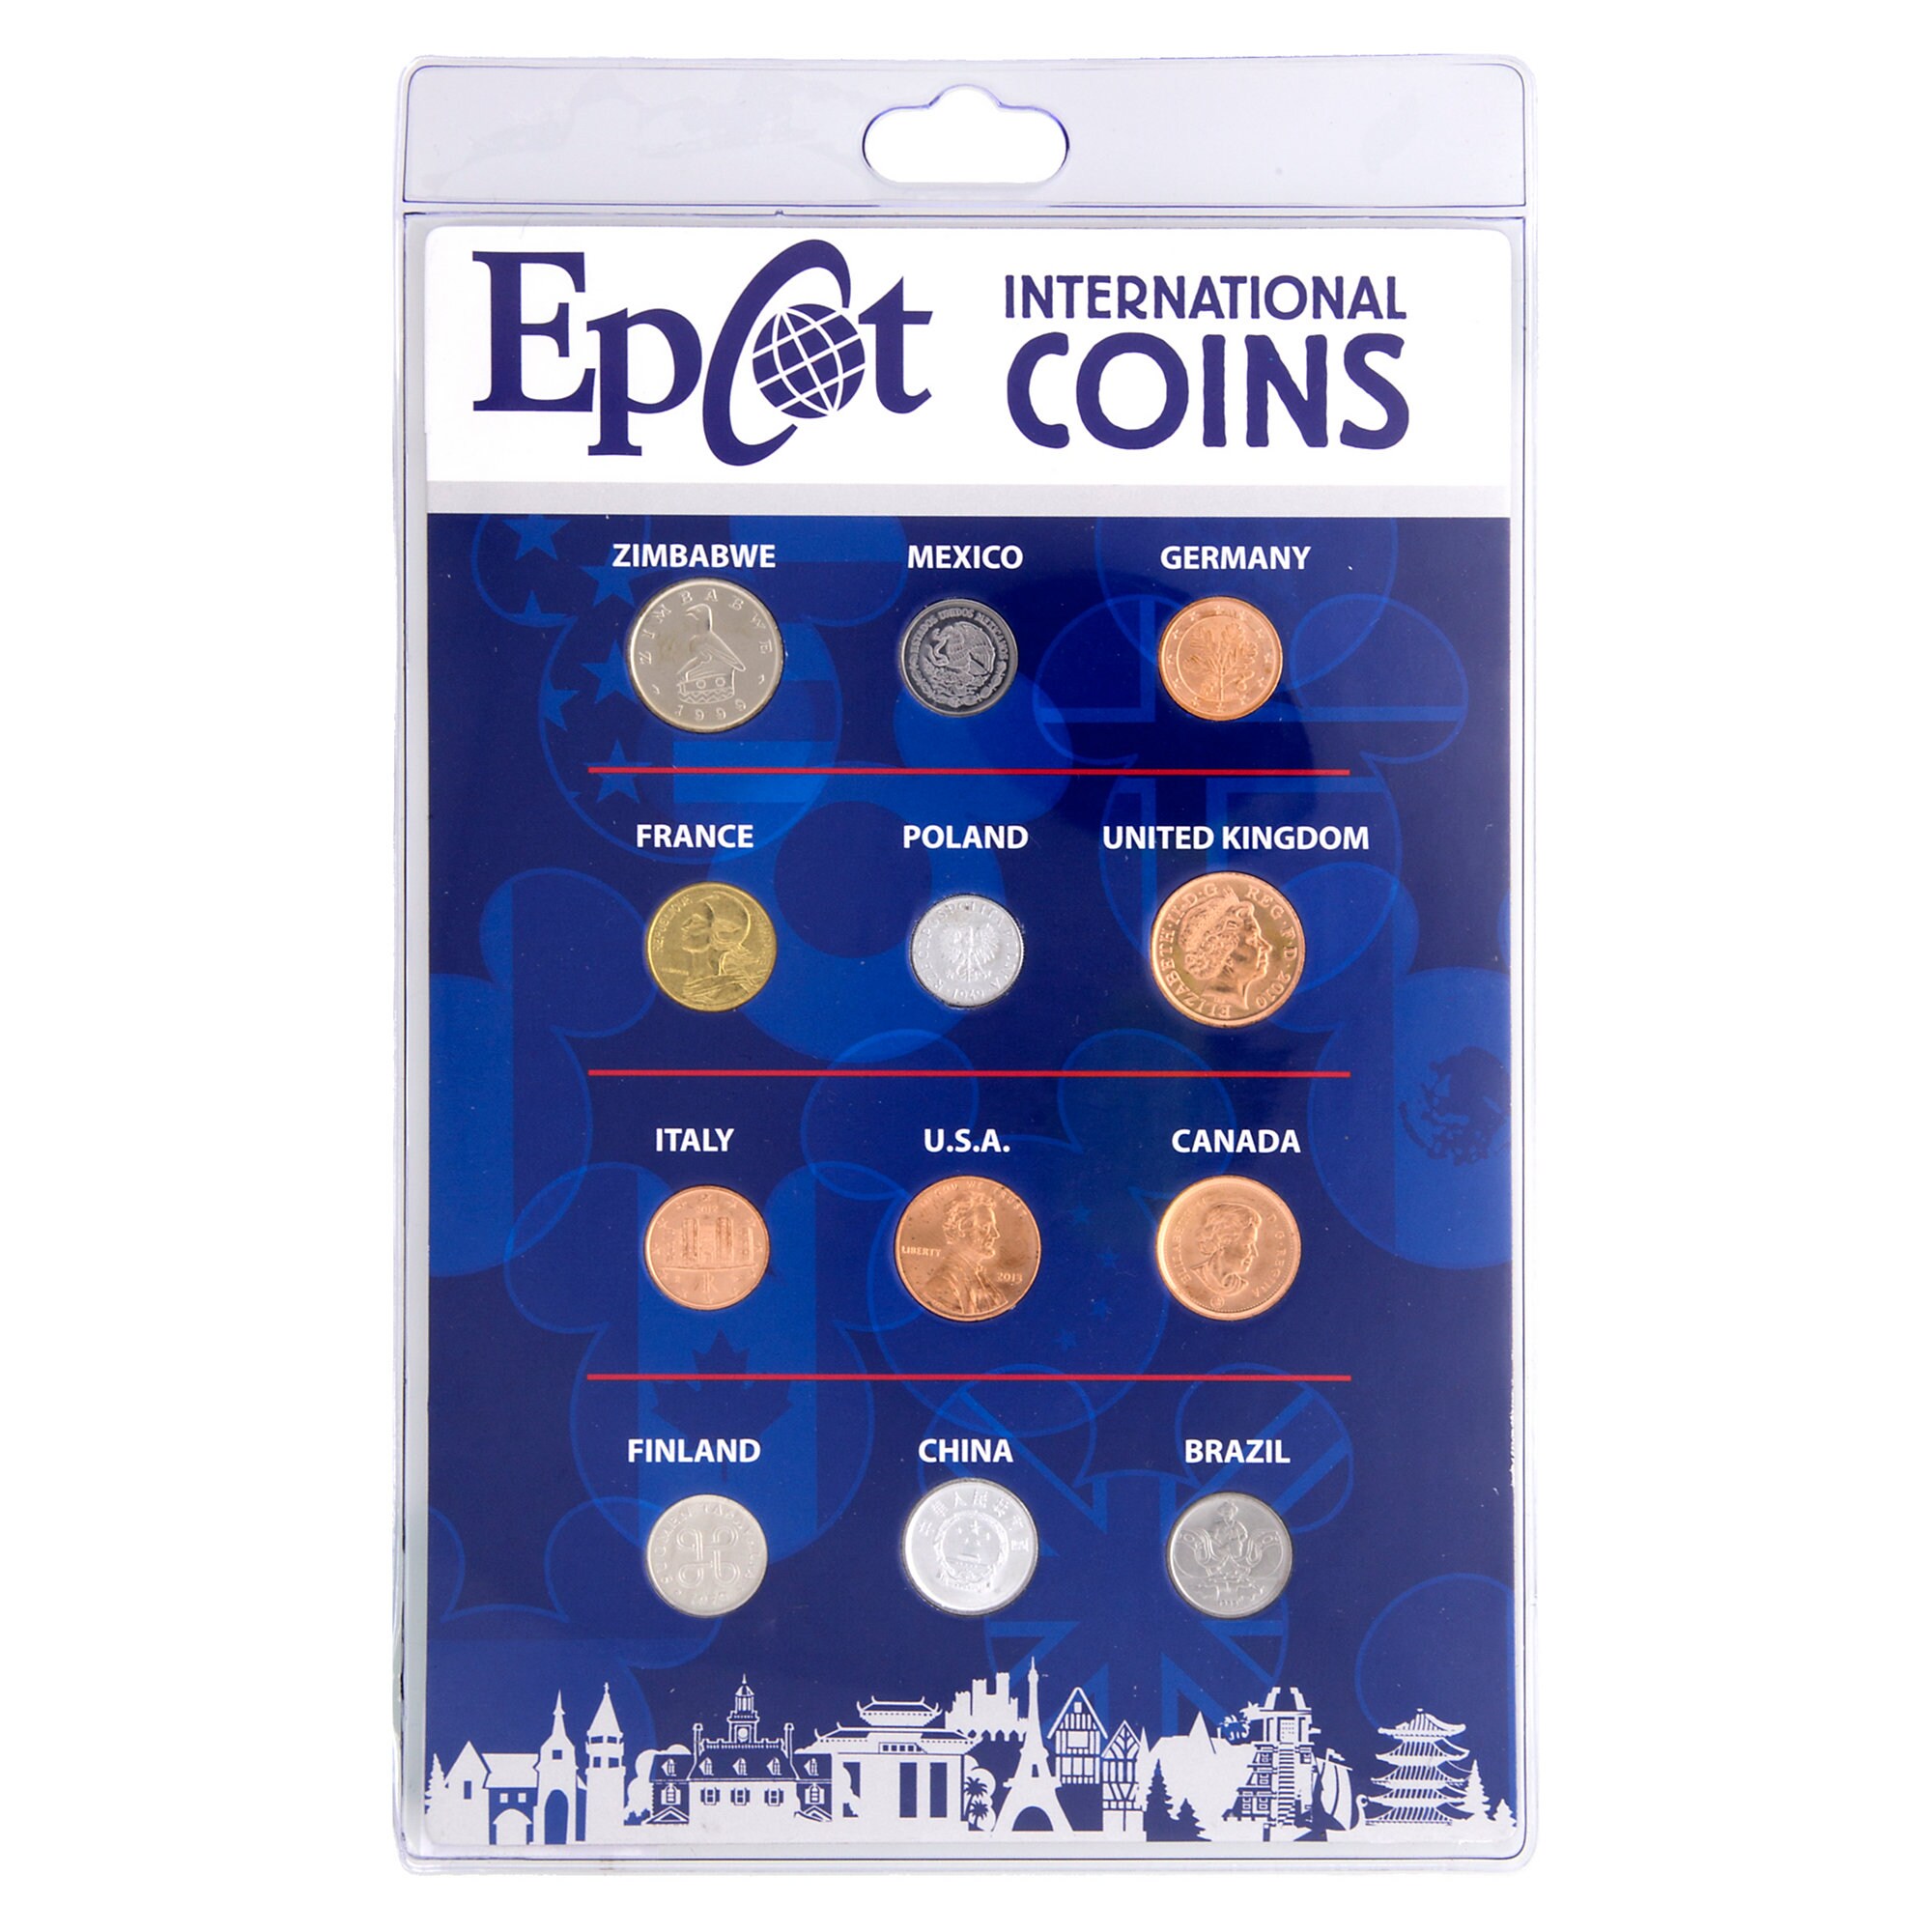 Epcot International Coin Set - Walt Disney World